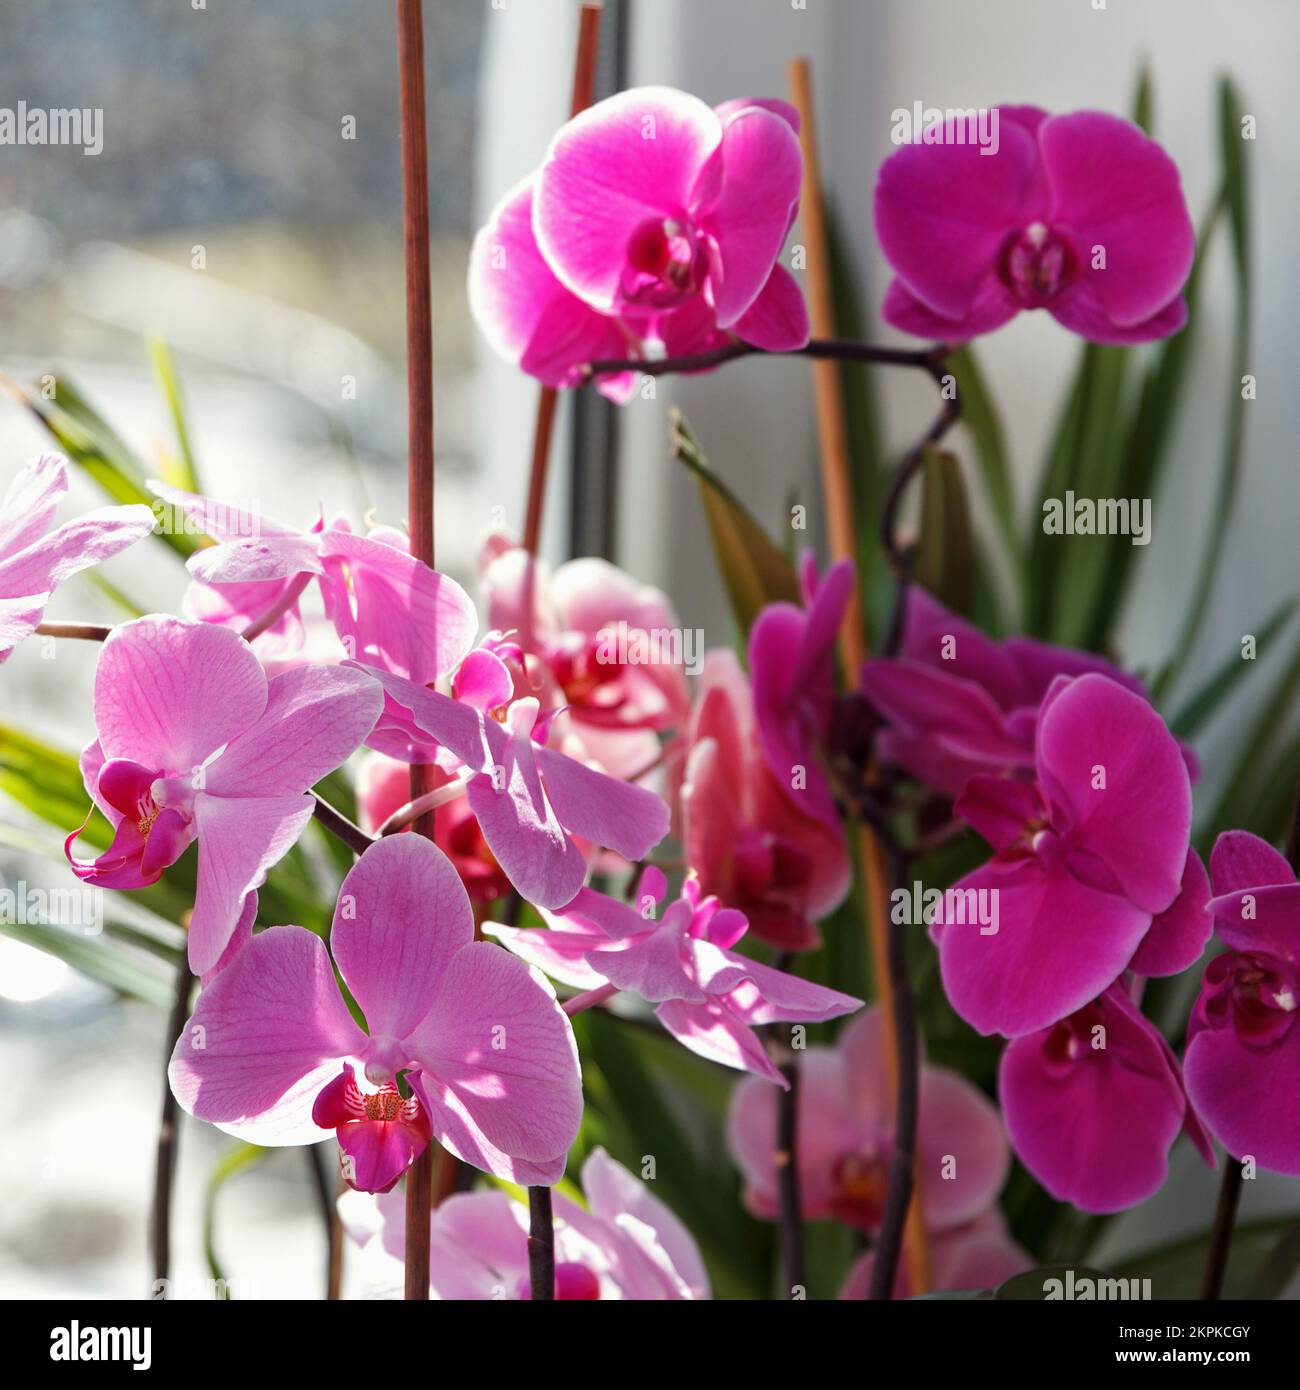 De belles grandes orchidées blanches et roses ont fleuri sur le rebord de la fenêtre dans la chambre Banque D'Images